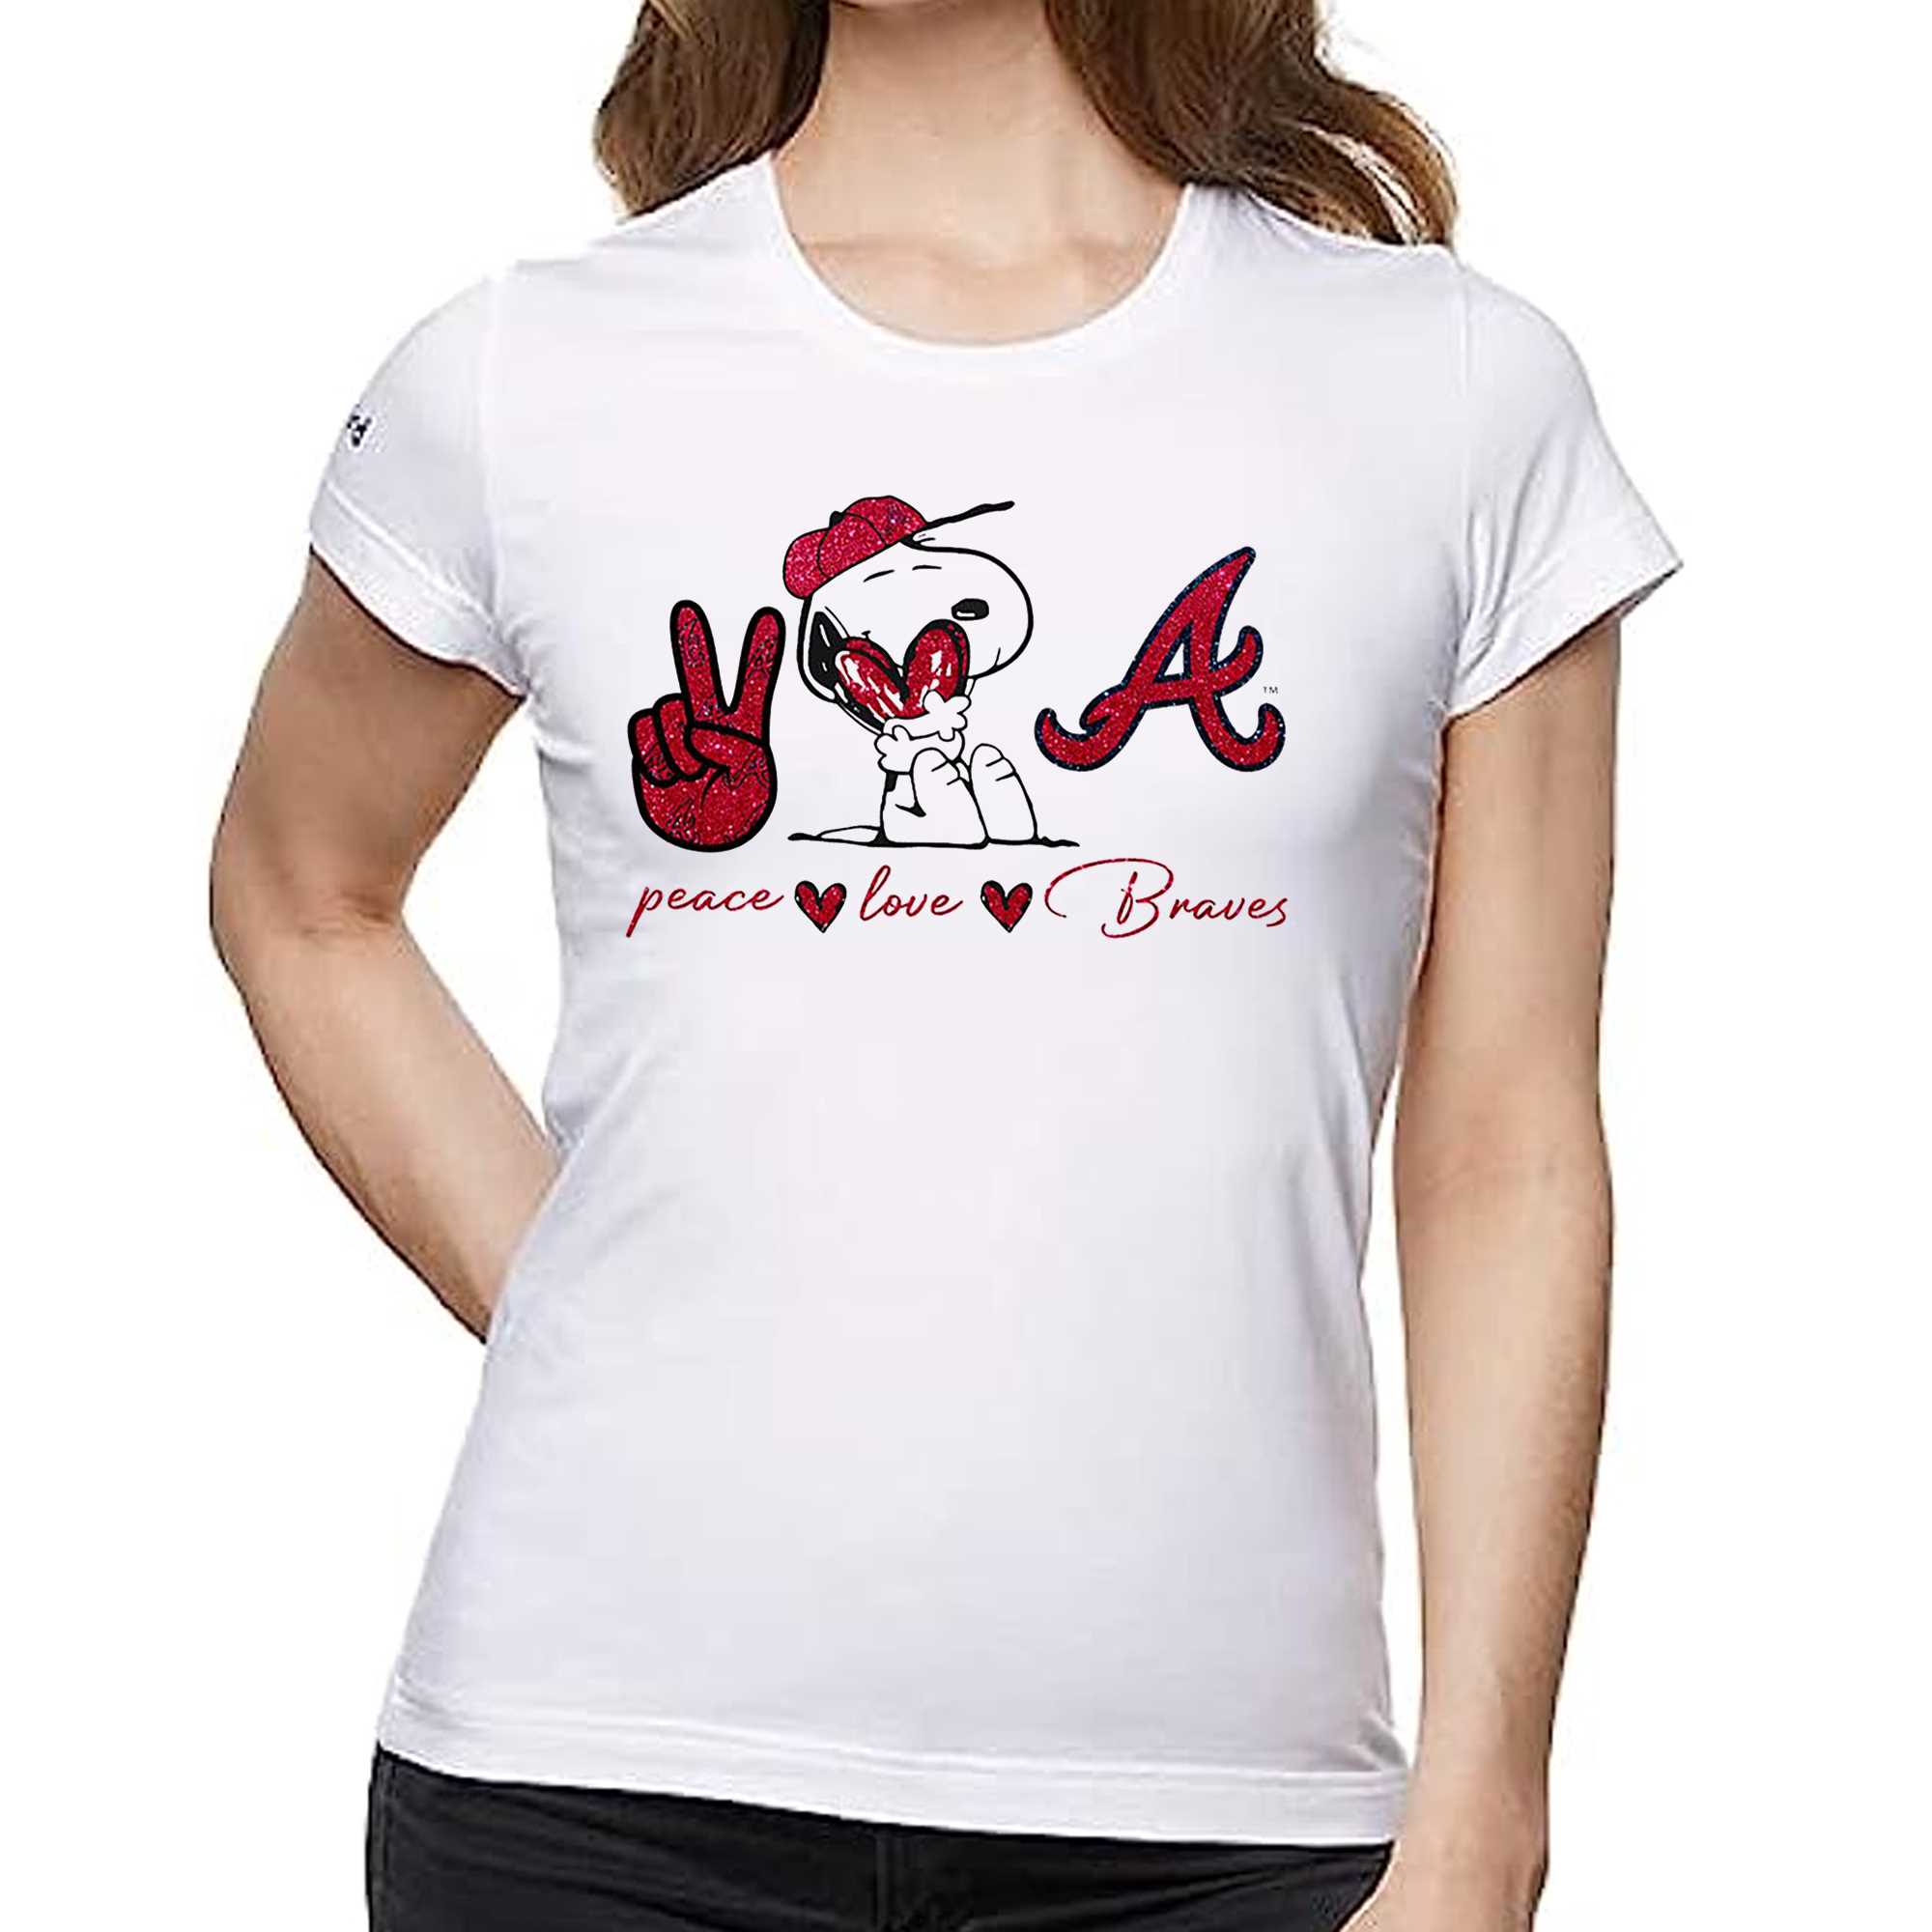 For The Love Of Atlanta Braves Shirt